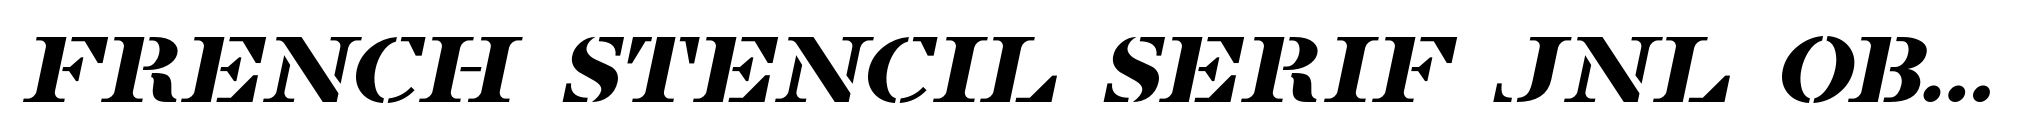 French Stencil Serif JNL Obllique image